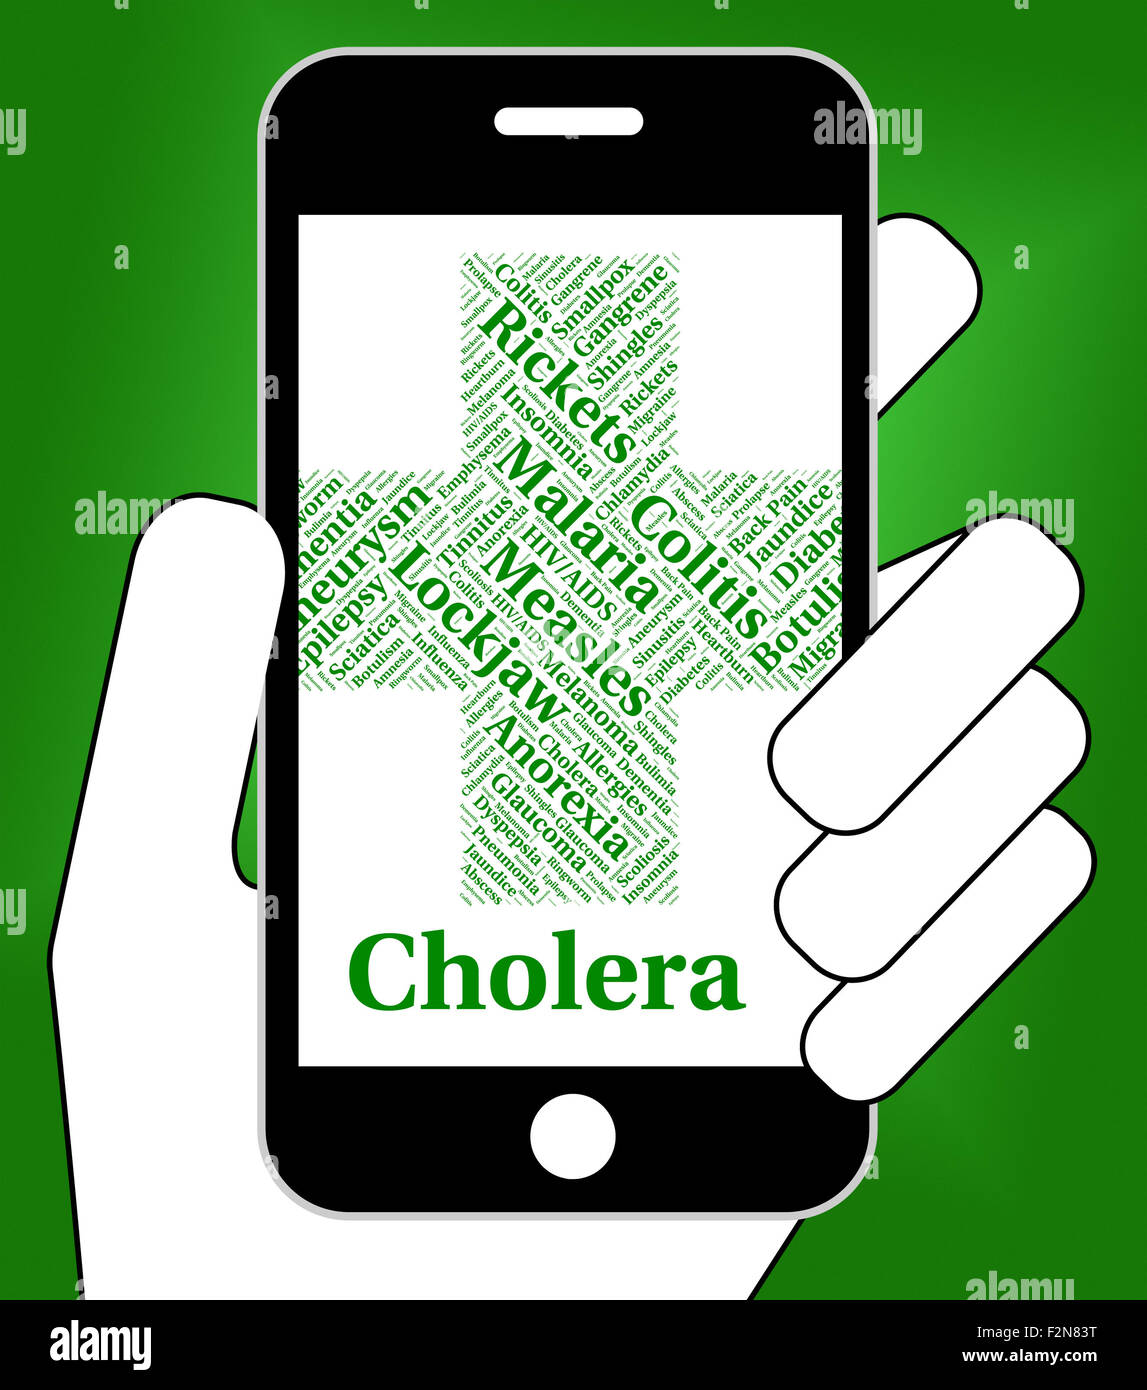 Cholera-Erkrankung bedeutet schlechte Gesundheit und Krankheit Stockfoto